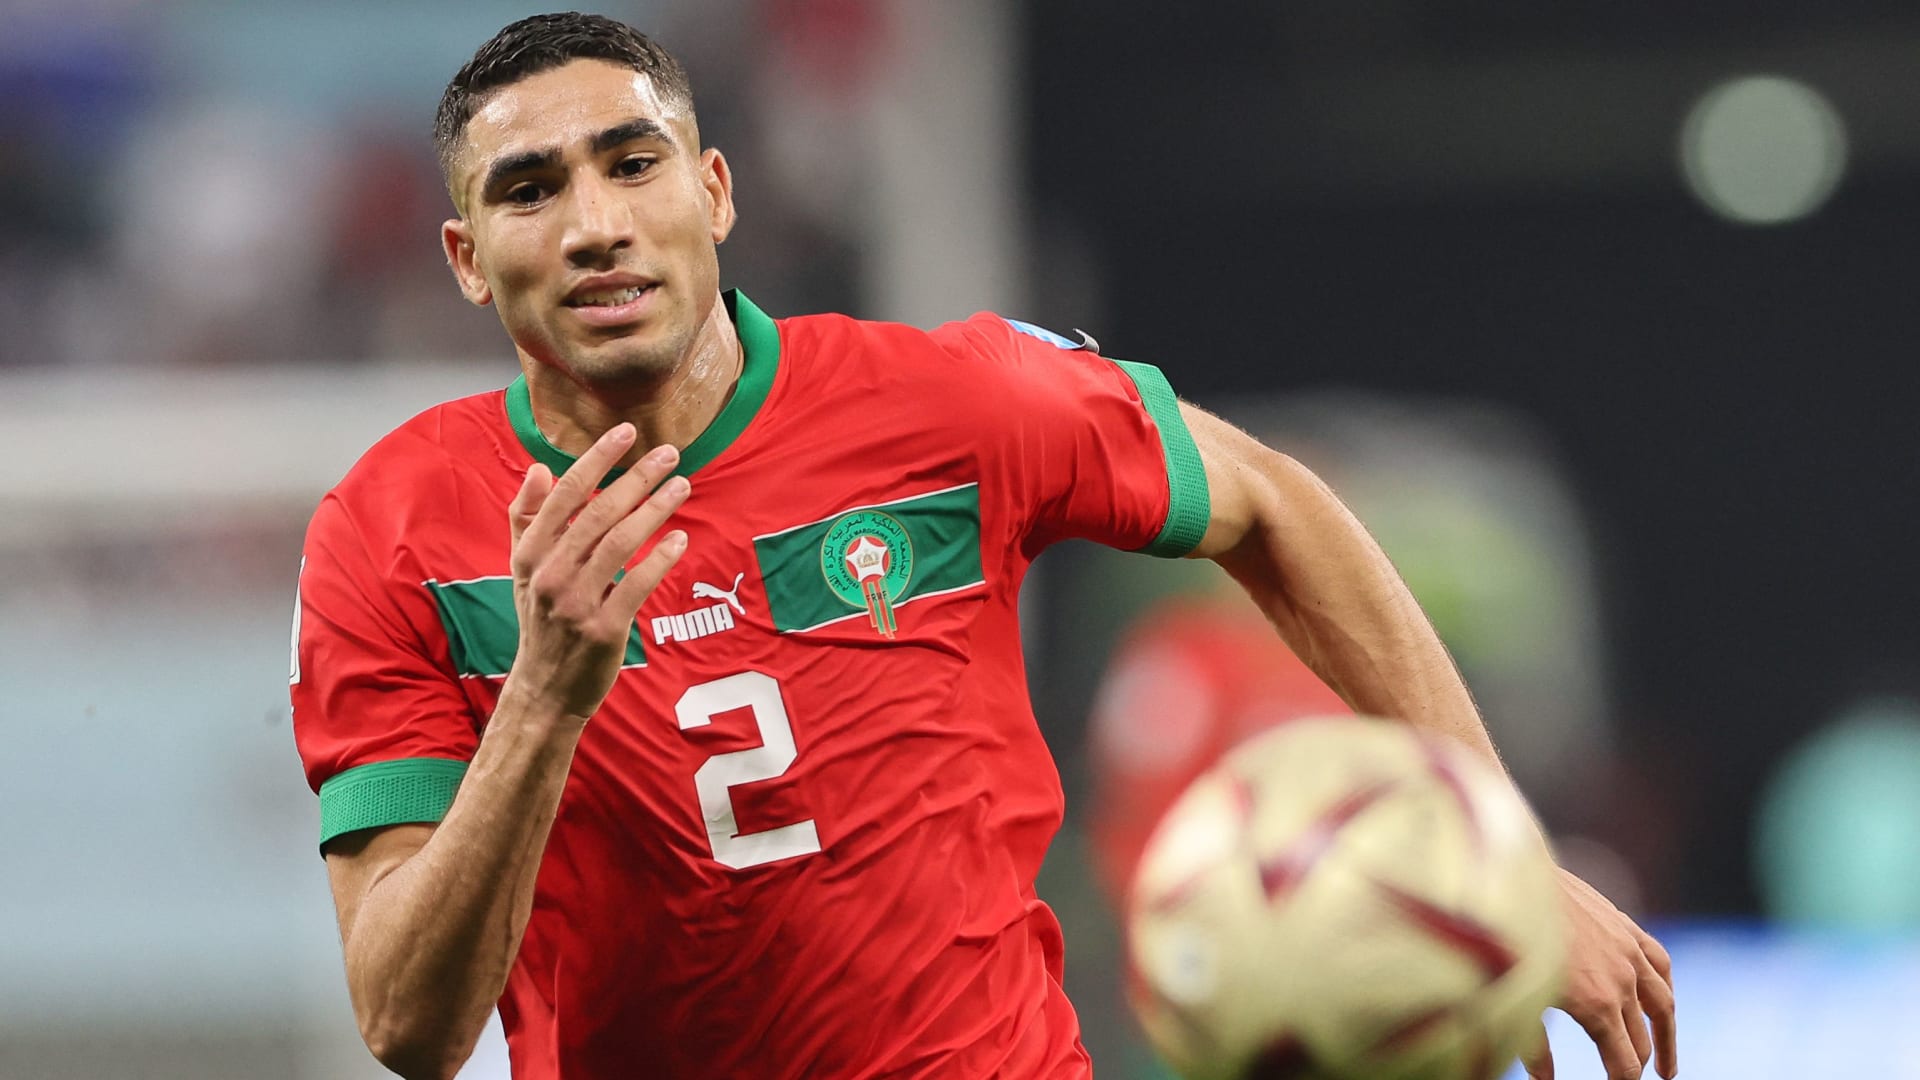 ليست نهاية حلم بل بداية حقبة.. أسباب أدت لخسارة المغرب أمام فرنسا